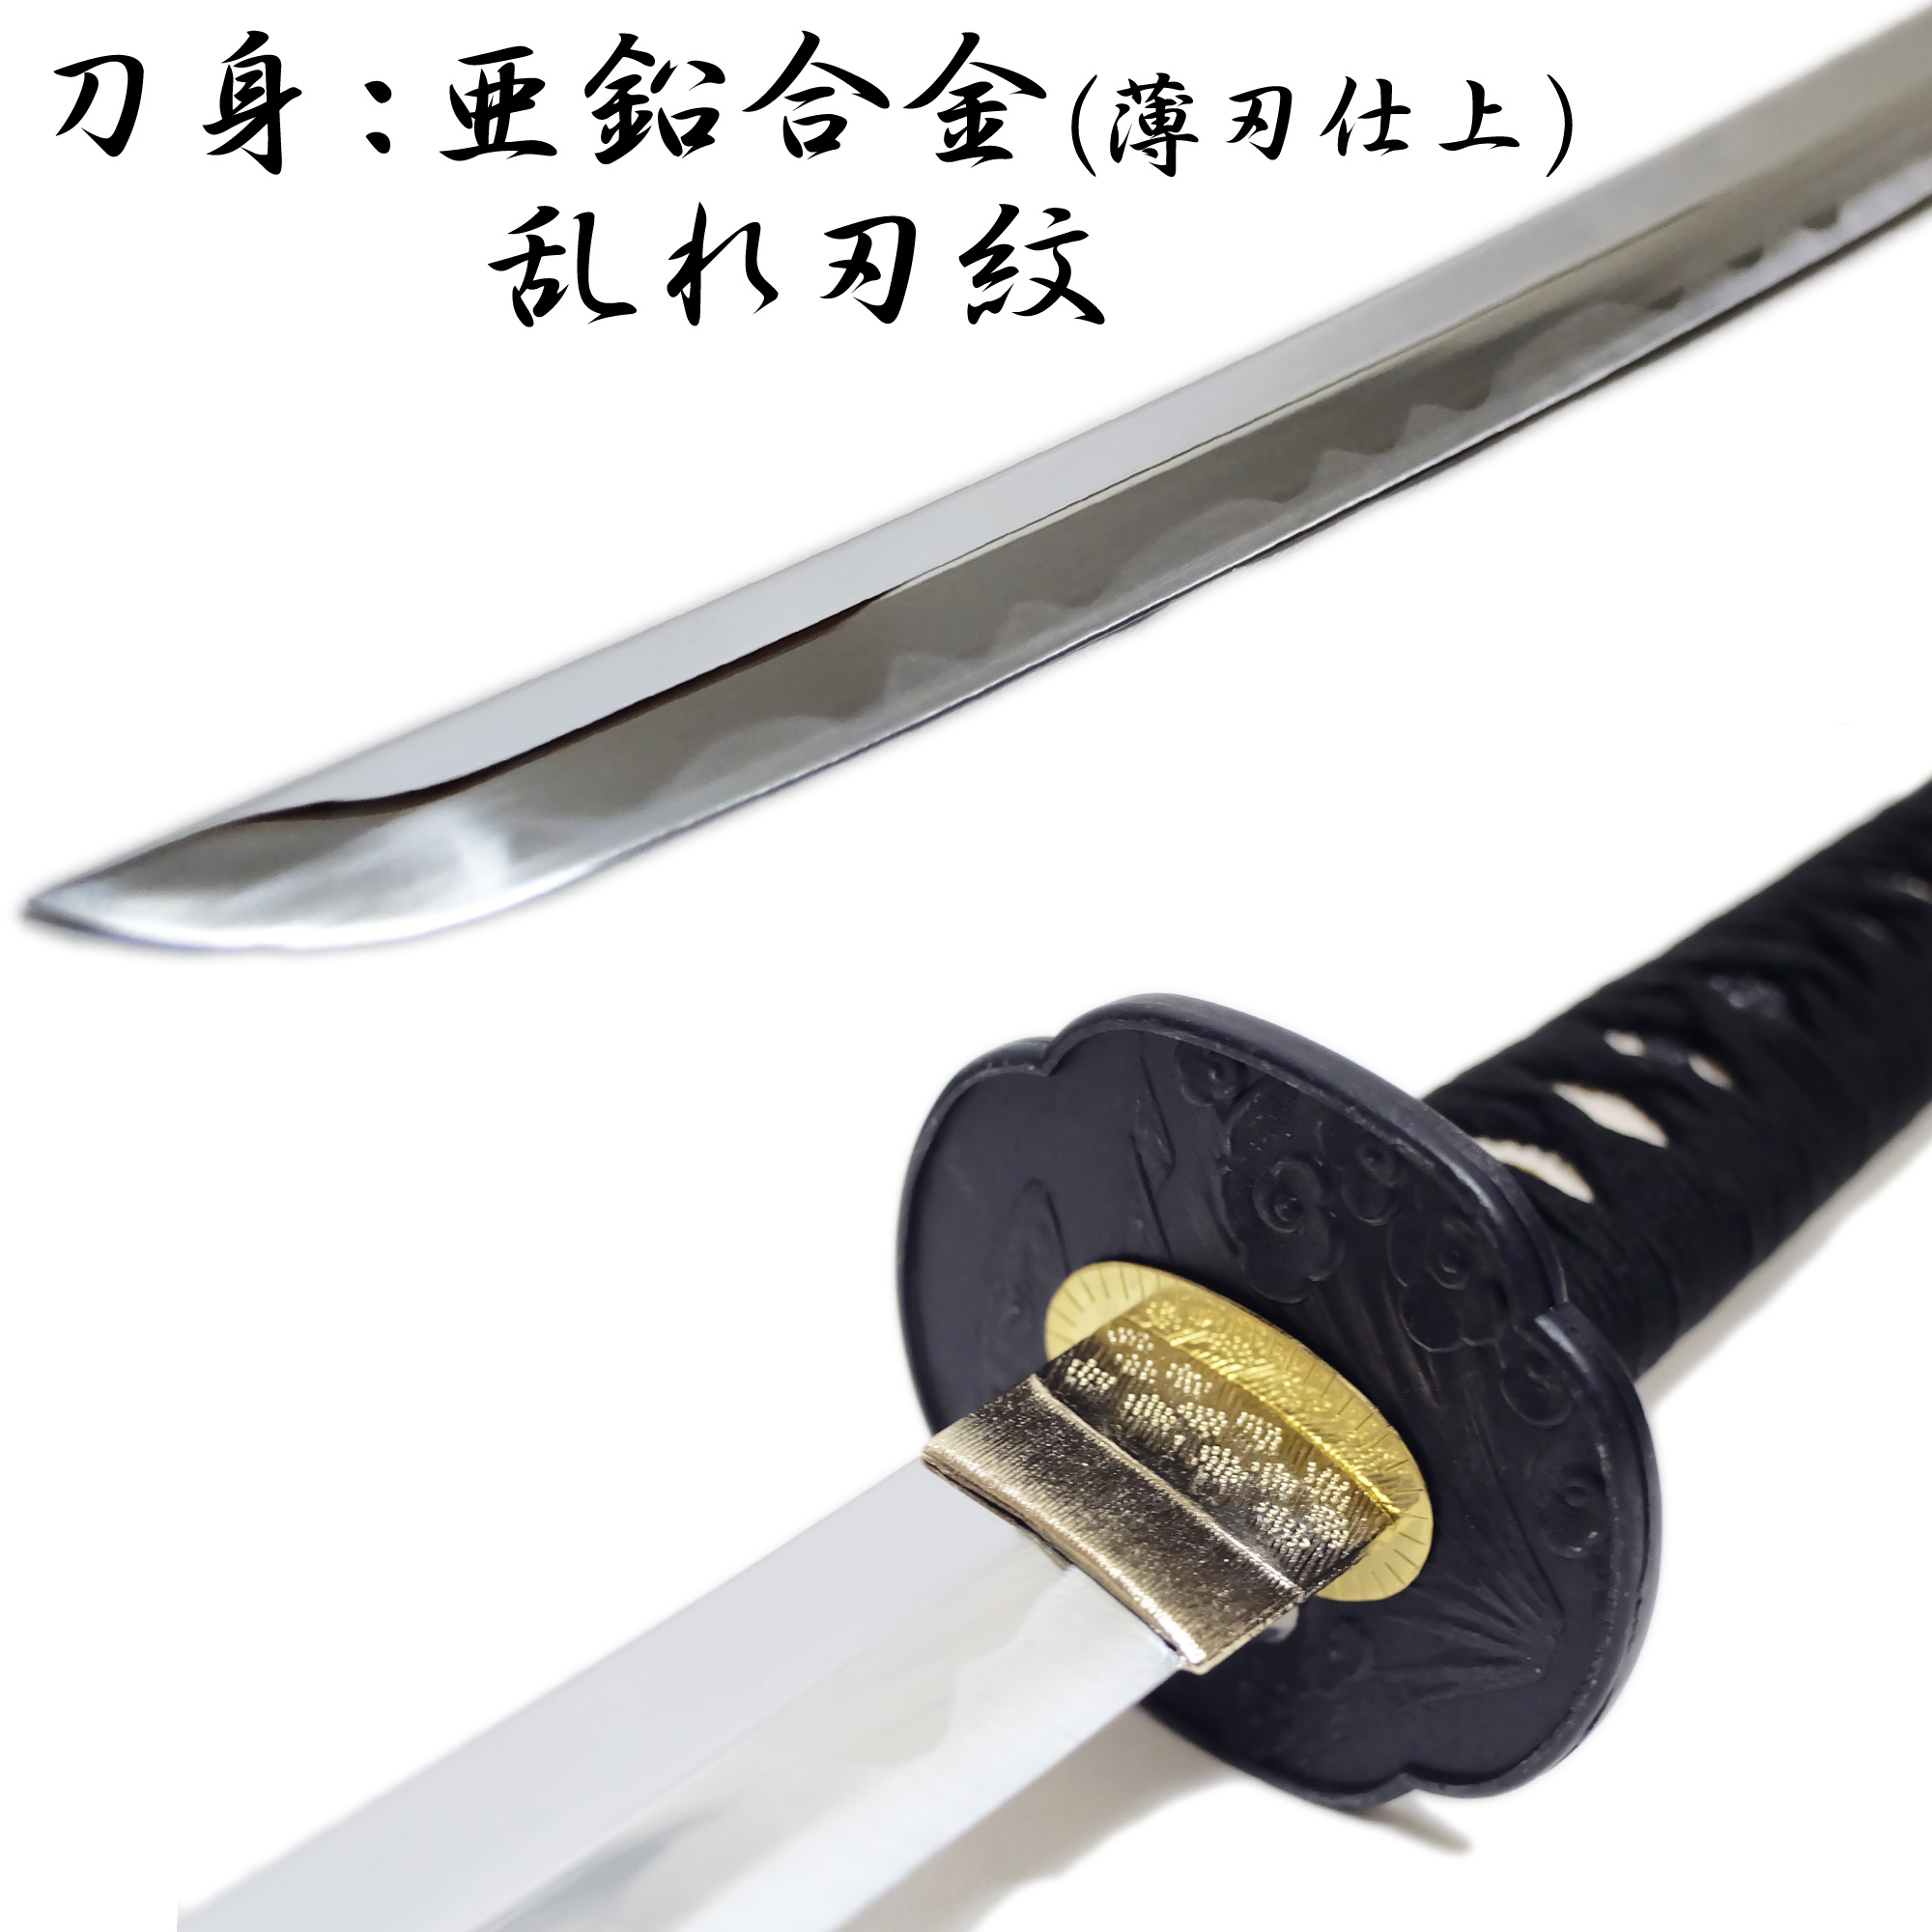 匠刀房 居合練習刀 ZS-103 - 大刀 模造刀